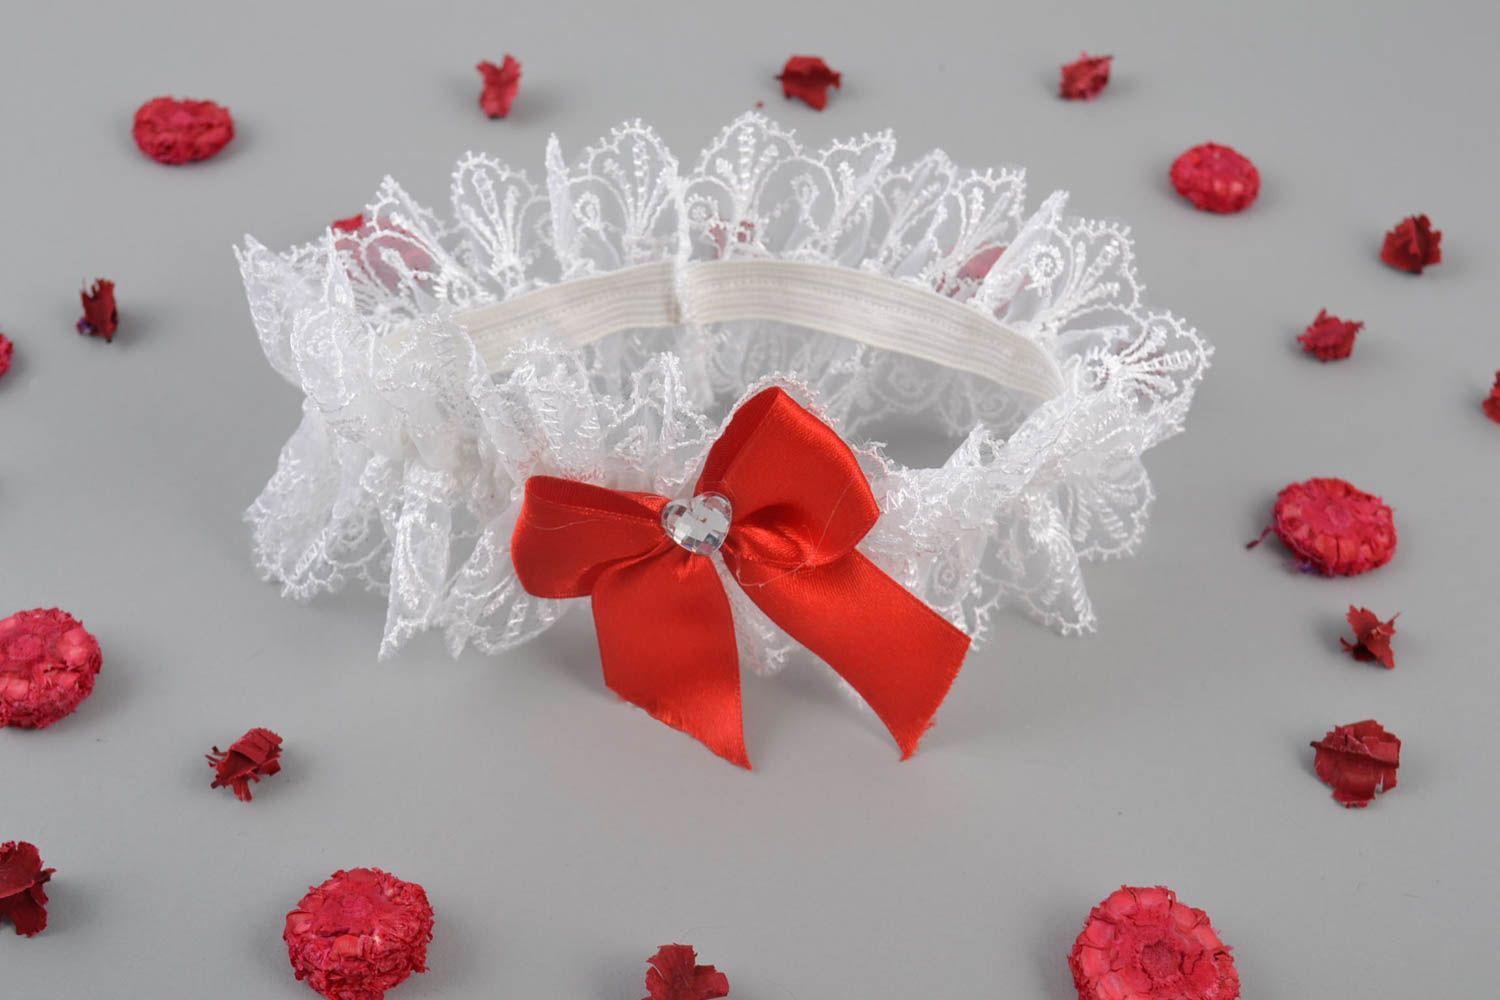 Jarretière de mariée en dentelle guipure blanche faite main avec noeud en ruban photo 1